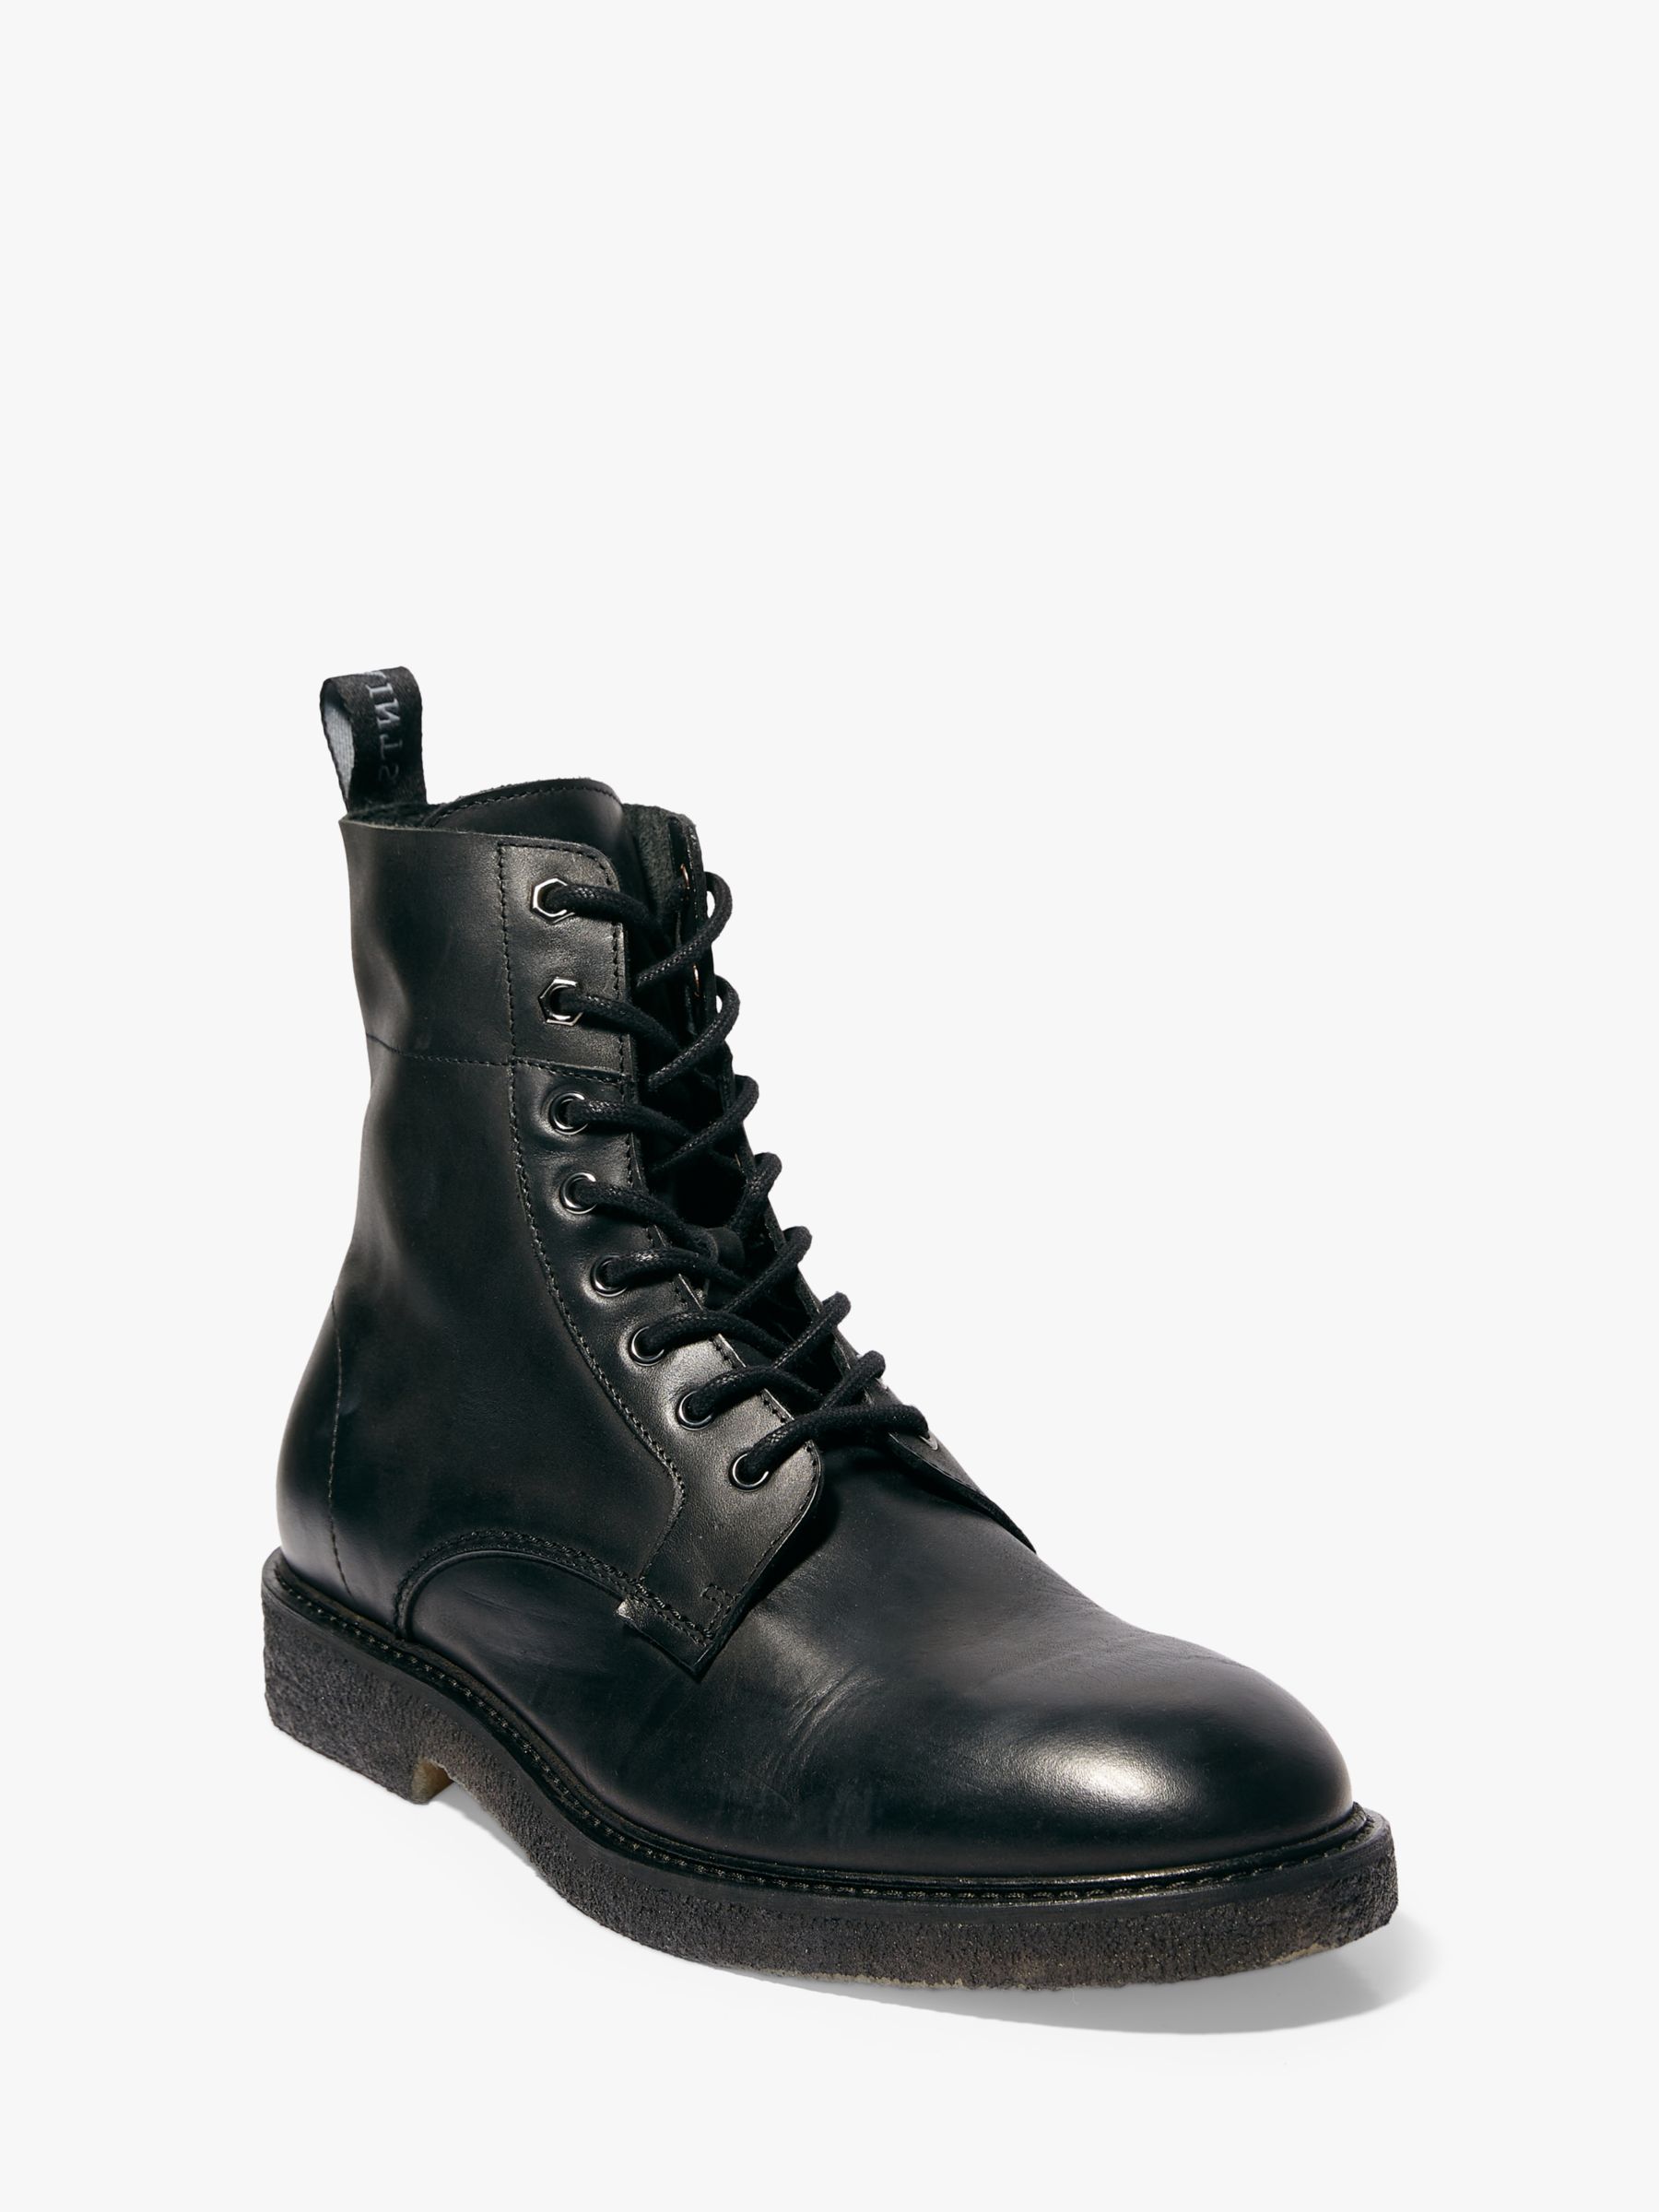 AllSaints Elden Leather Boots, Black